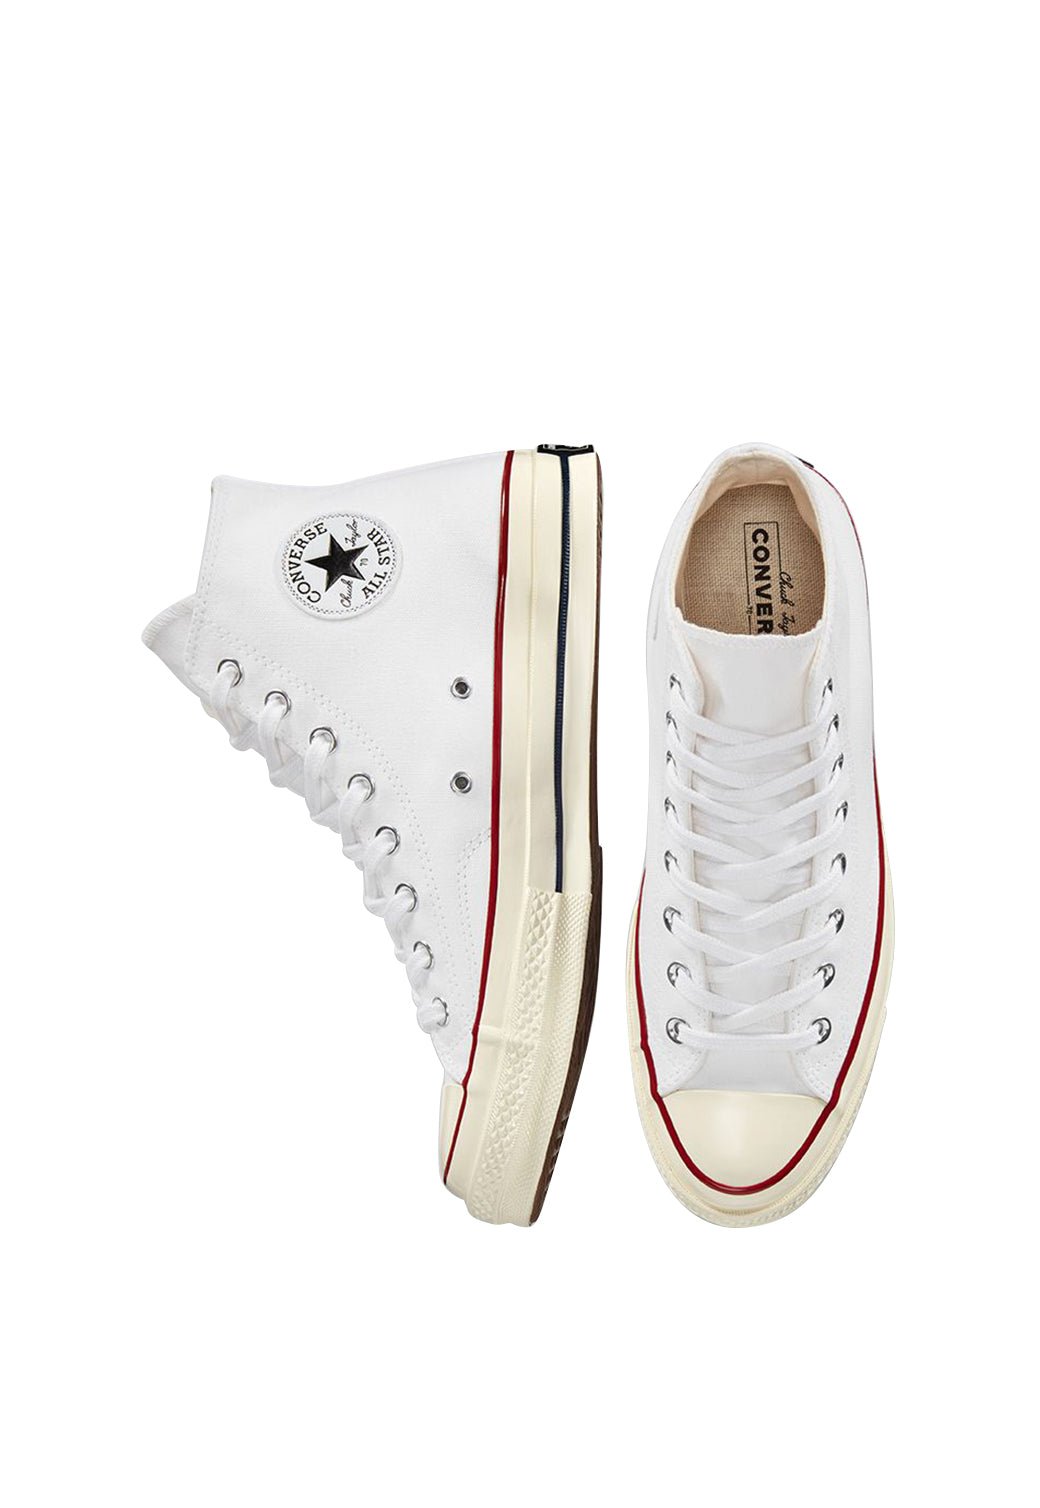 נעלי אולסטאר Chuck 70 גבוהות בצבע לבן לנשים - Converse